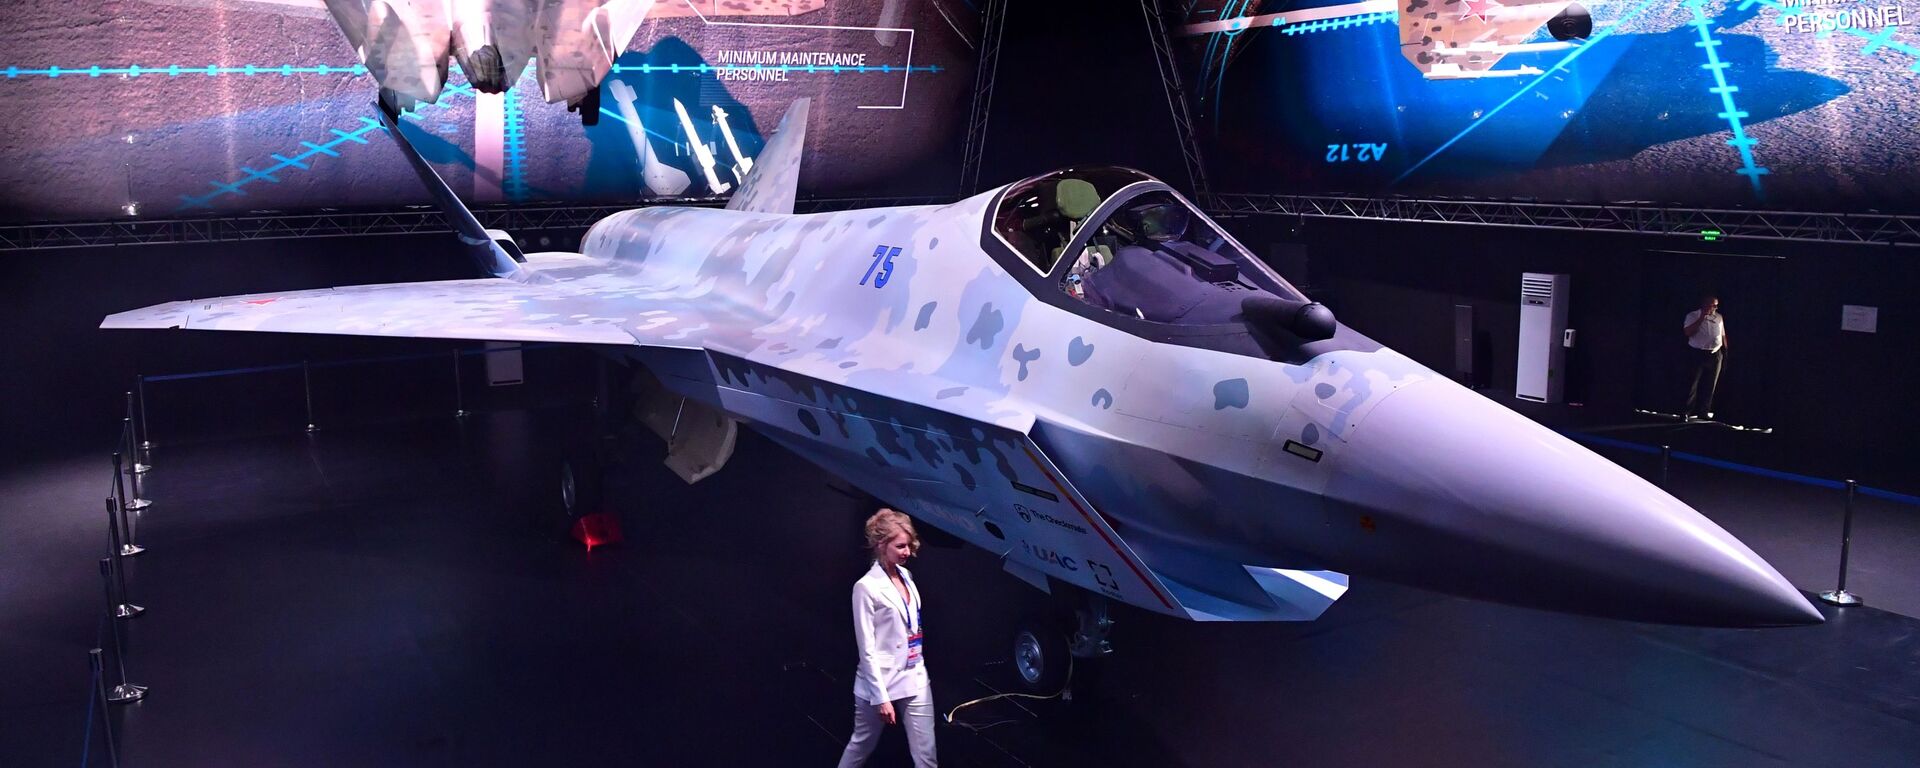 مقاتلة سوخوي تشيك ميت (كش ملك) في معرض الطيران والفضاء الدولي ماكس 2021 في جوكوفسكي، ضواحي موسكو، روسيا 20 يوليو 2021 - سبوتنيك عربي, 1920, 29.11.2021